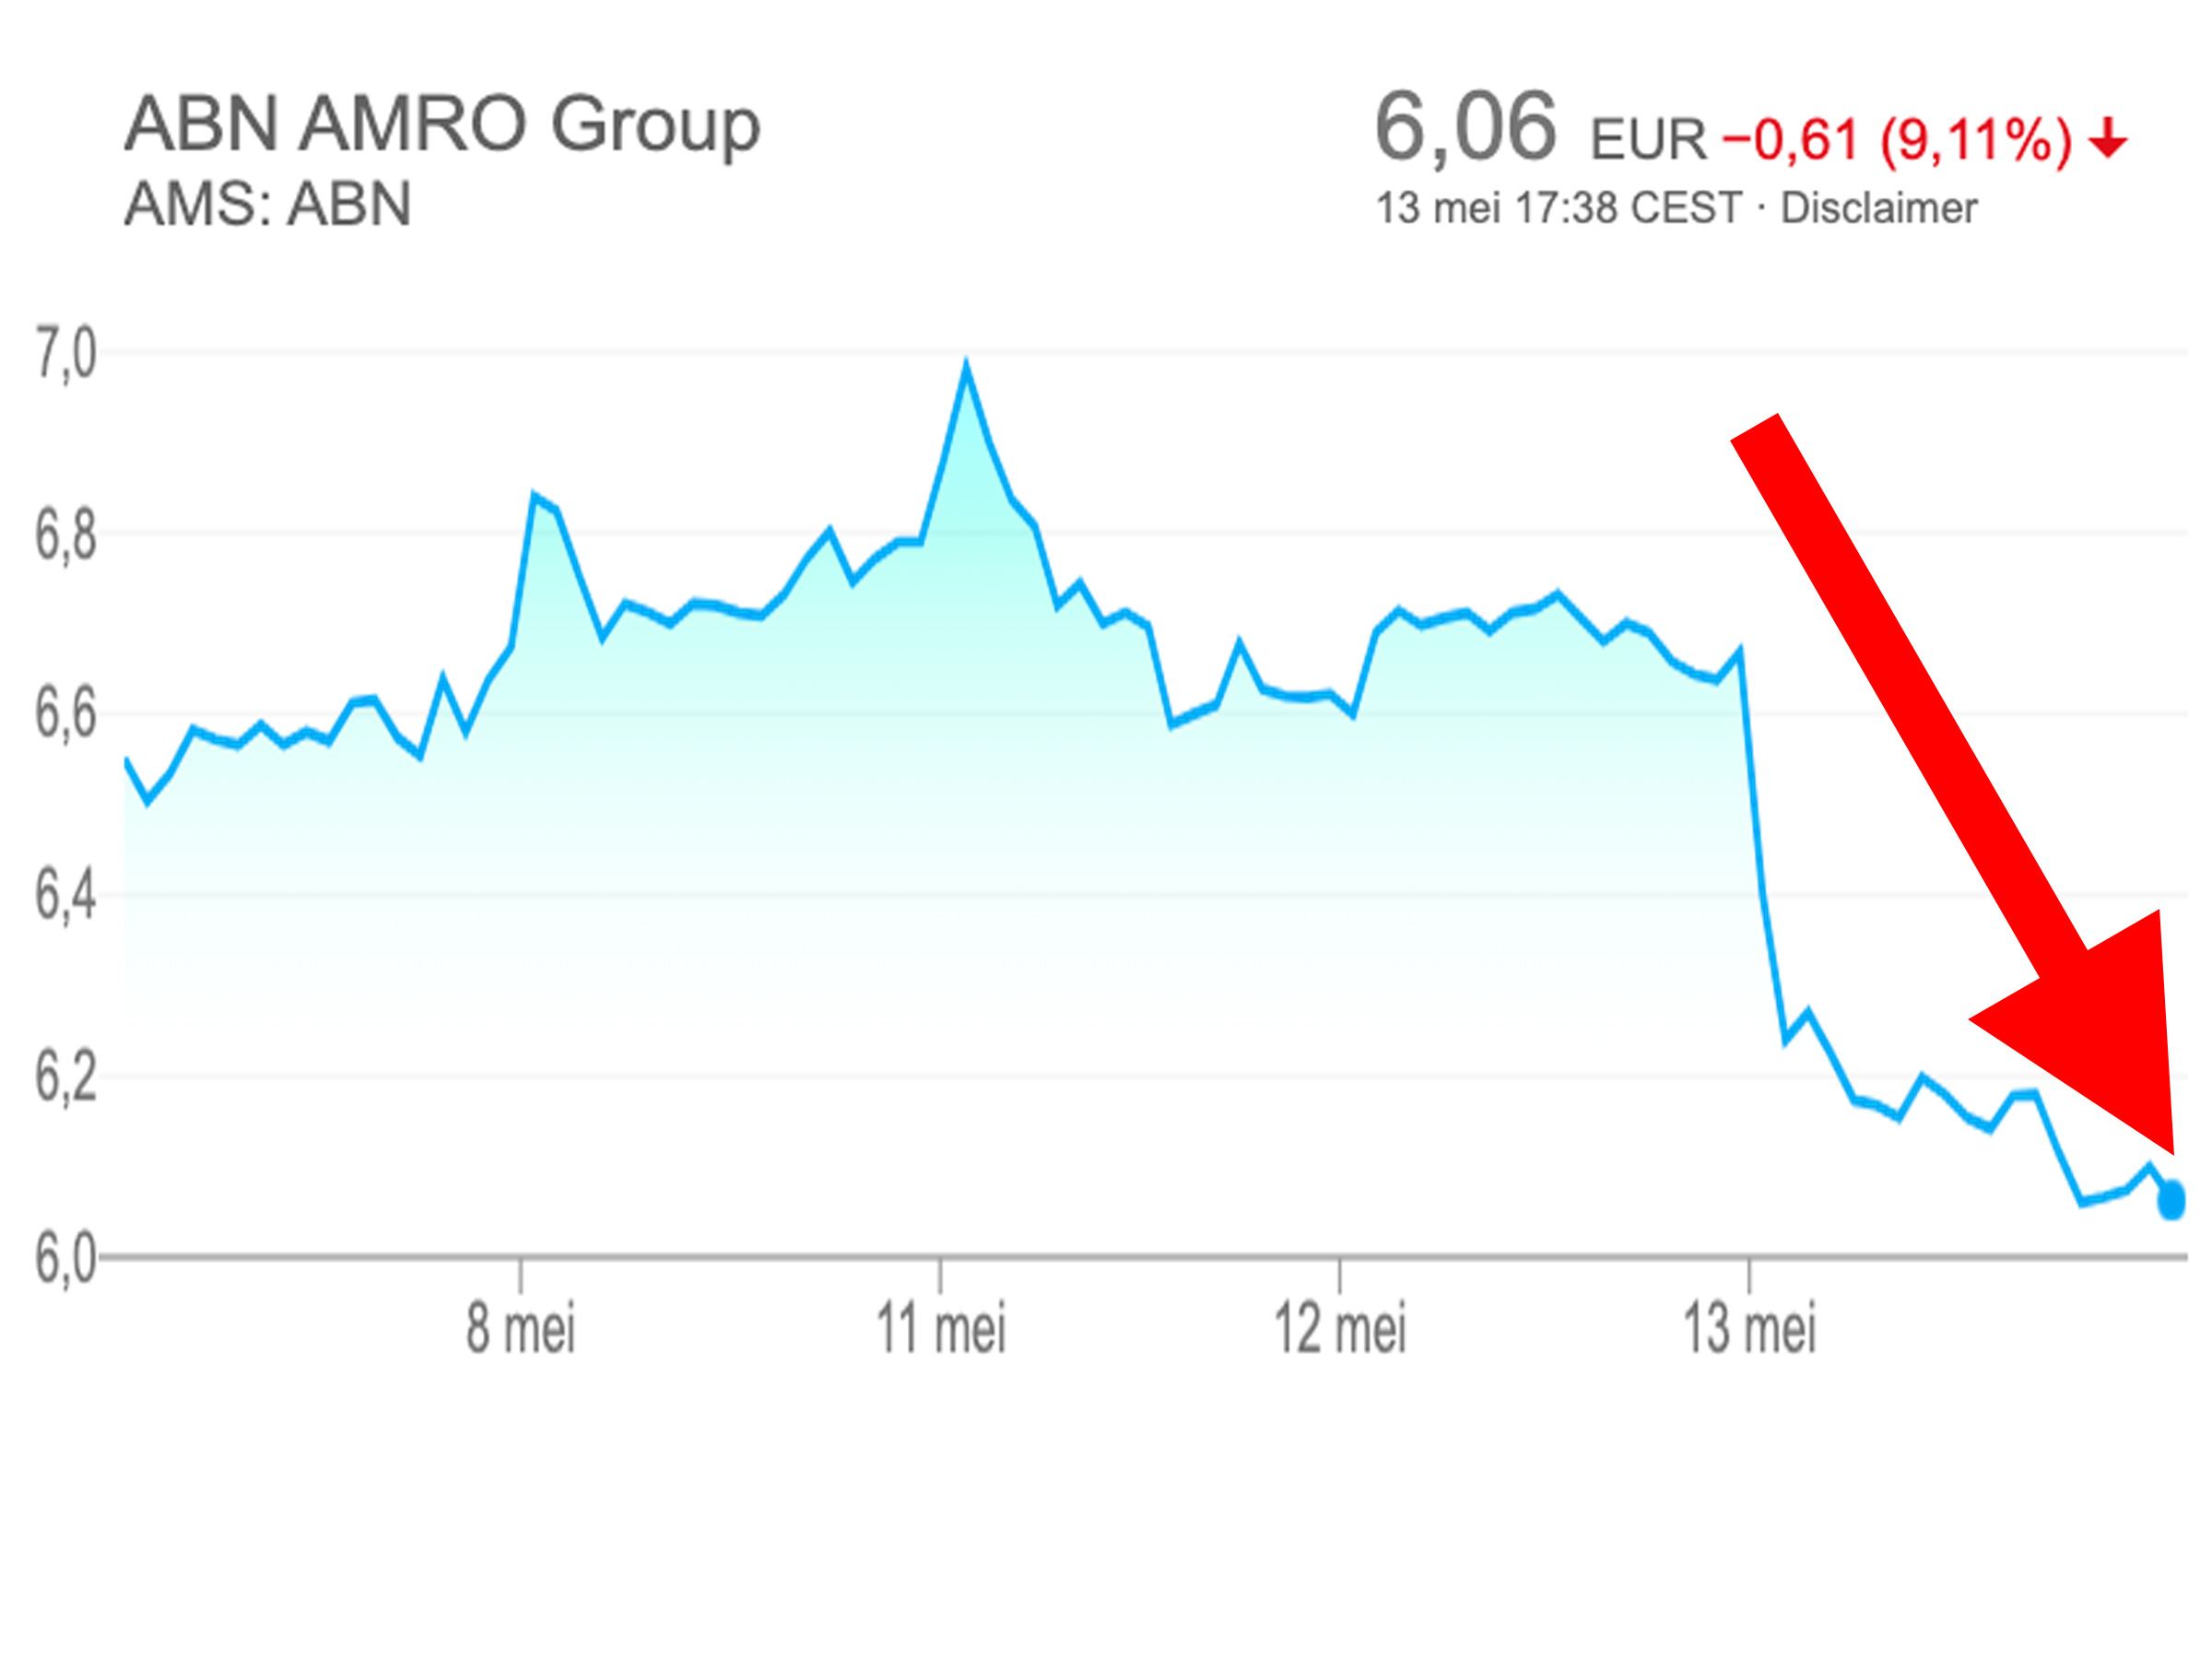 Het aandeel van ABN Amro verloor op 13 mei zo'n 290 miljoen euro aan beurswaarde